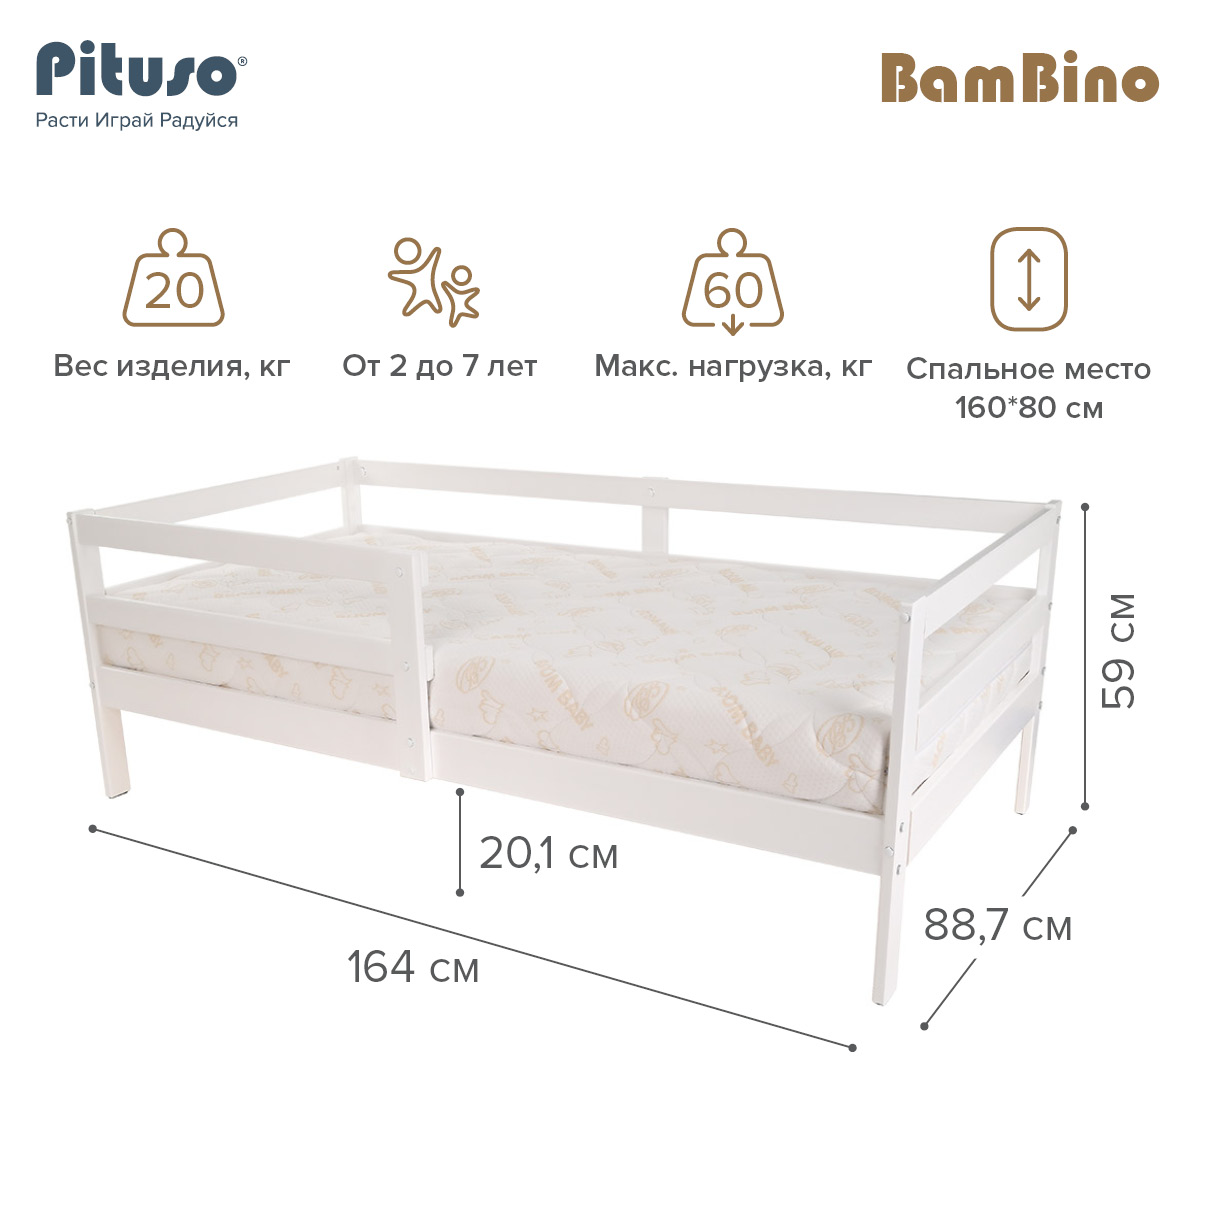 Кровать подростковая Pituso BamBino белый подростковая кровать pituso amada 160х80 см